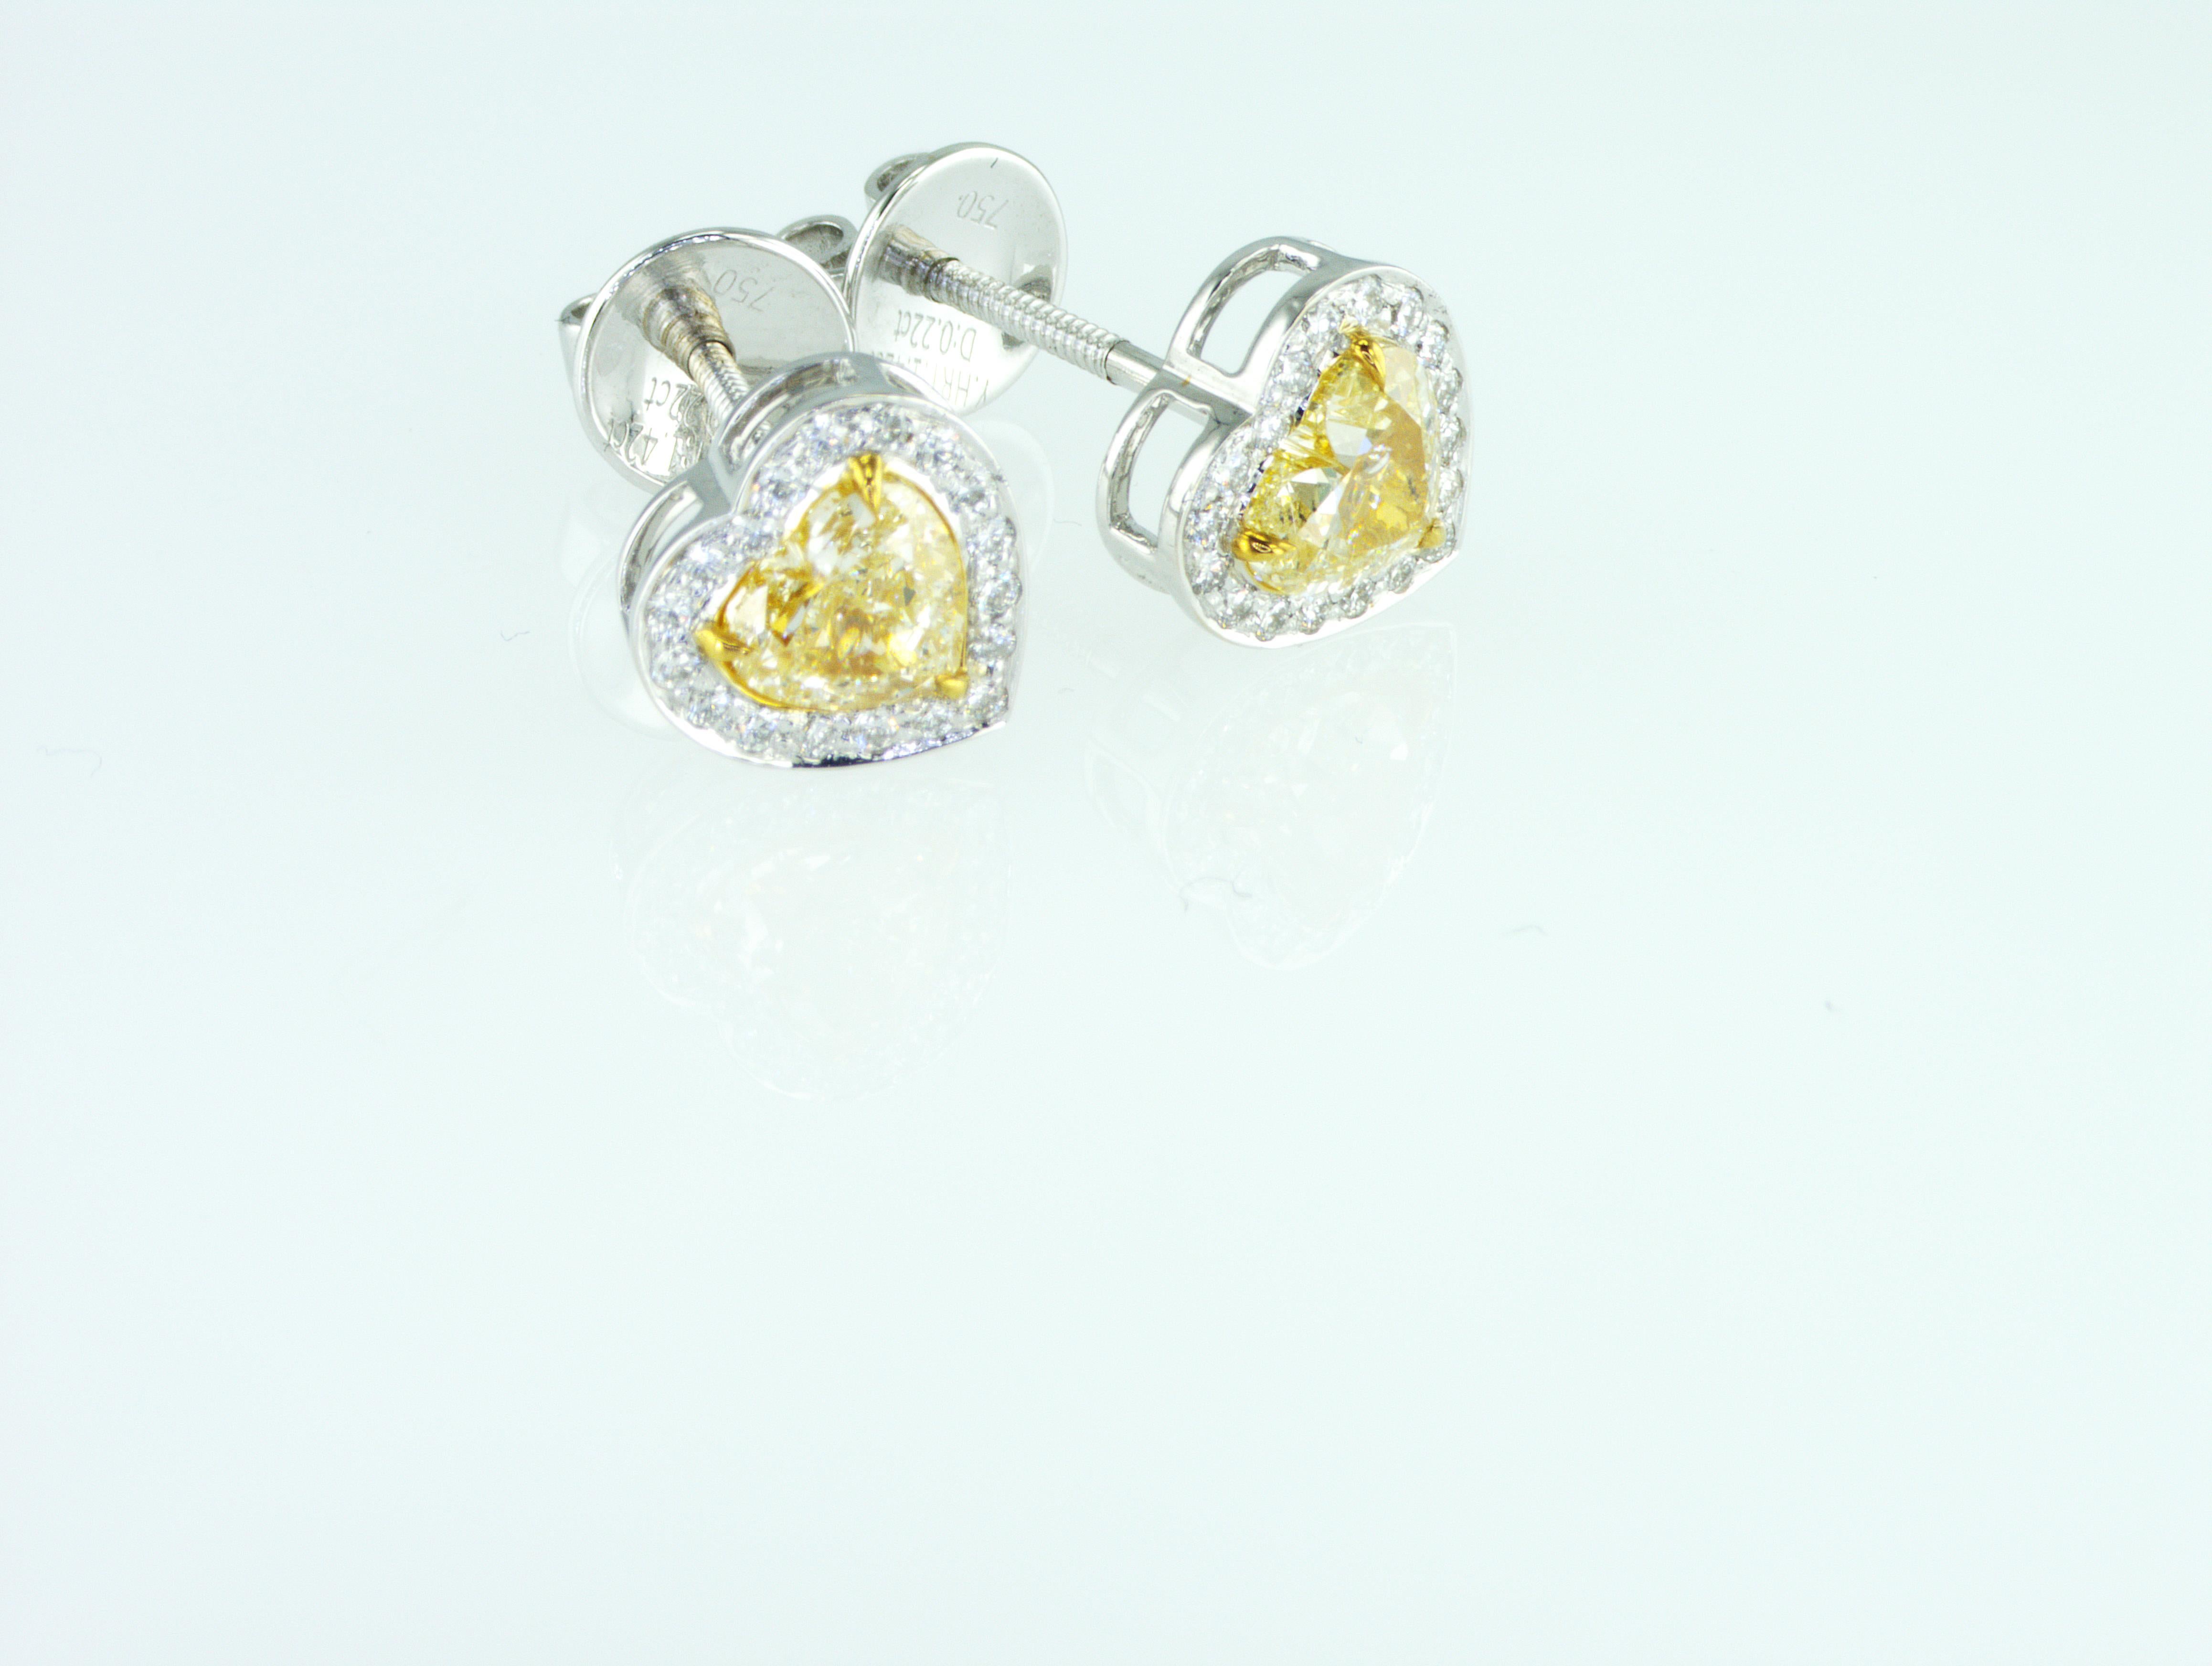 Wir sind ein Unternehmen für die Herstellung von Naturdiamanten mit Sitz in Dubai.
Seltene 1,66 Karat Fancy Yellow Heart Form natürliche Diamanten Ohrringe. 
Das Gesamtgewicht der natürlichen Diamanten beträgt 1,66 Karat. Alle unsere Diamanten,